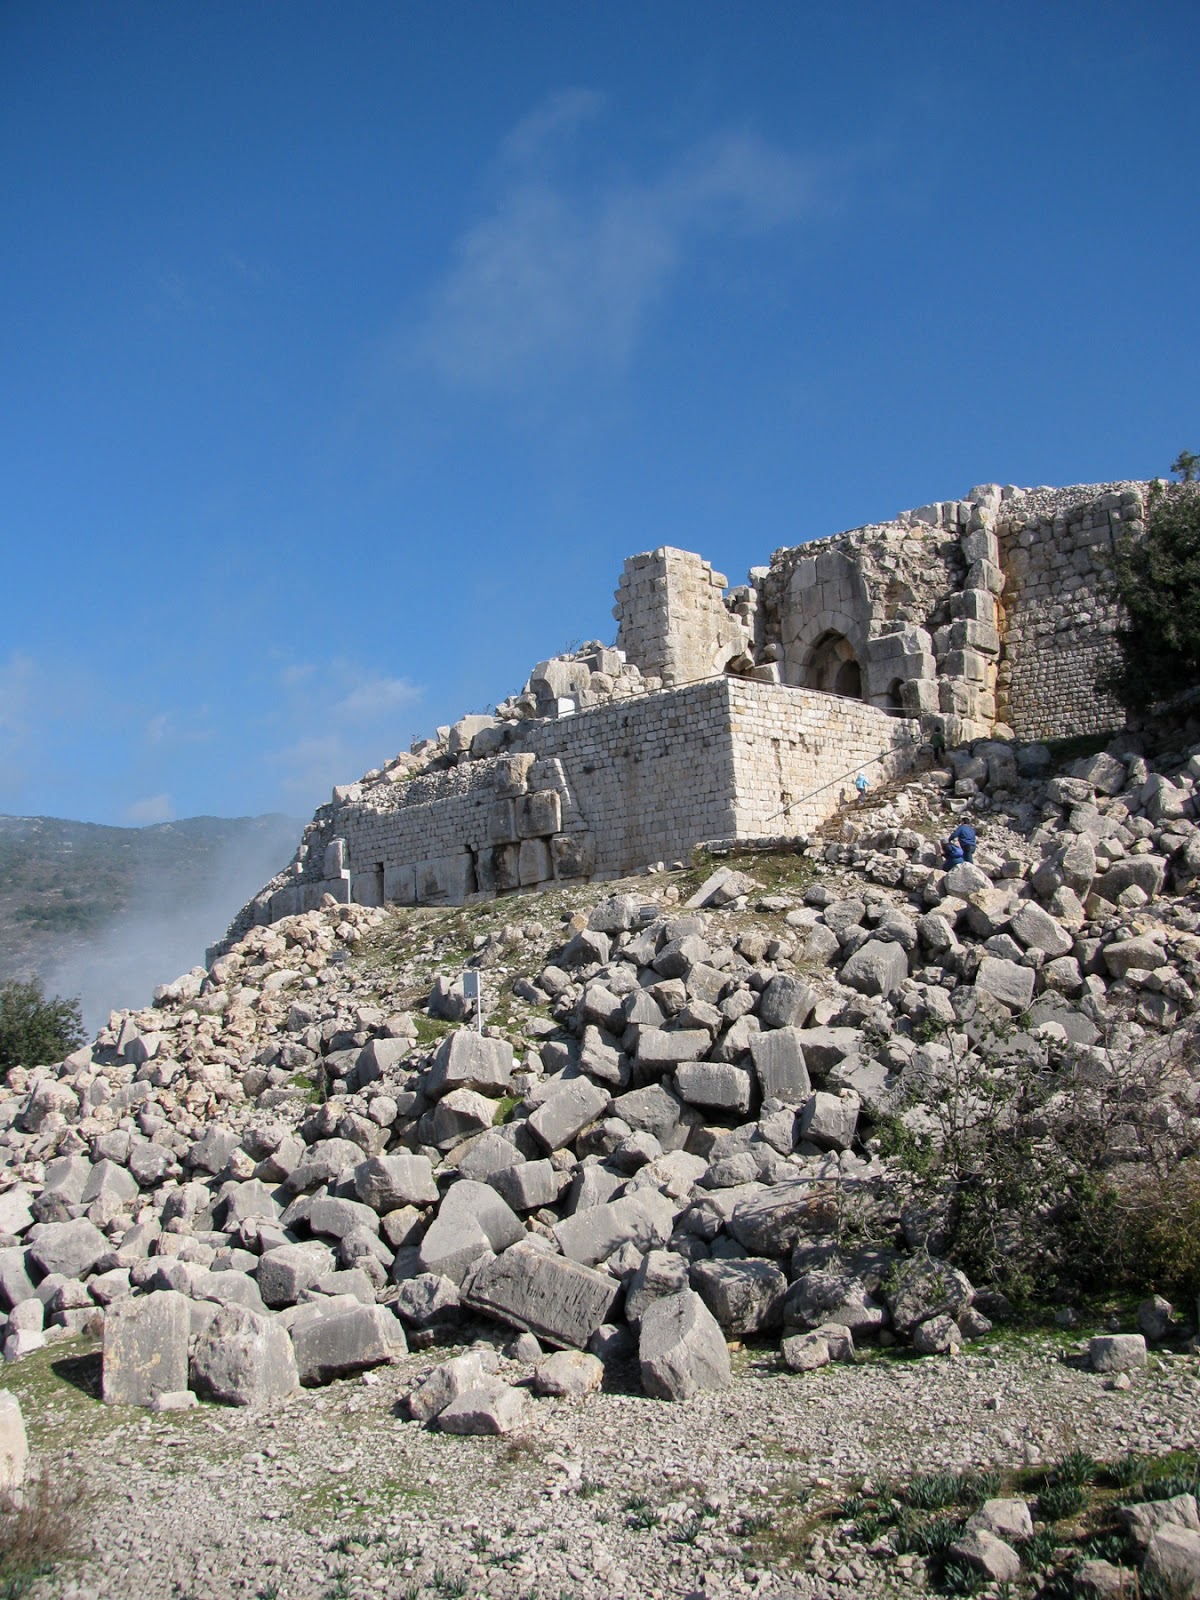 Ten fabulous fortresses in Israel 